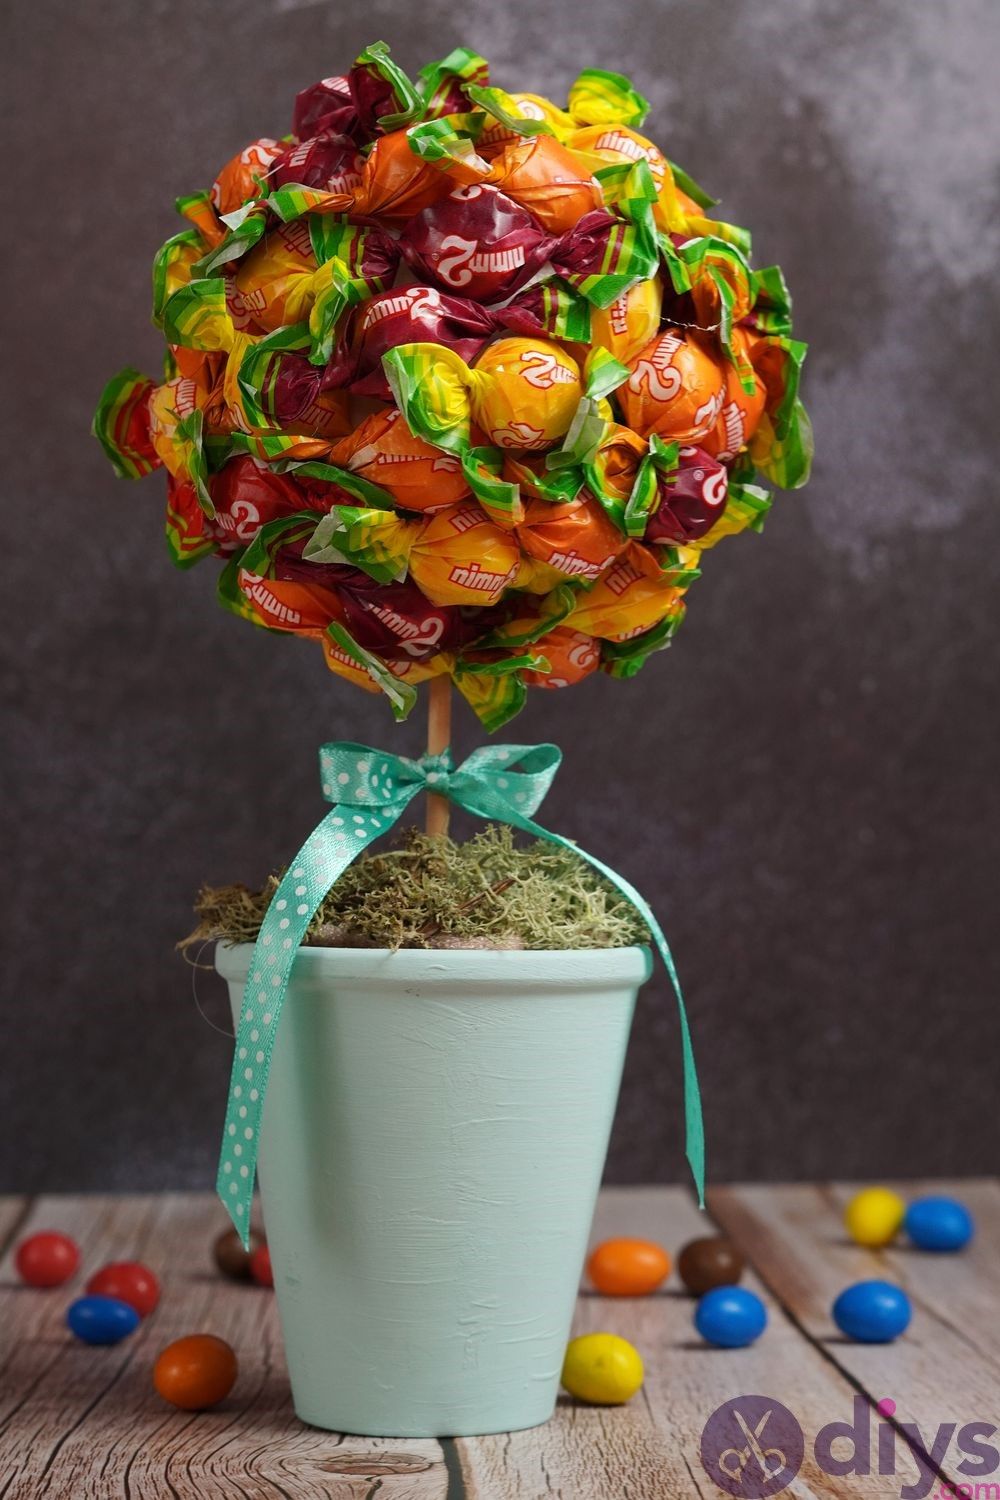 Diy terracotta pot candy bouquet